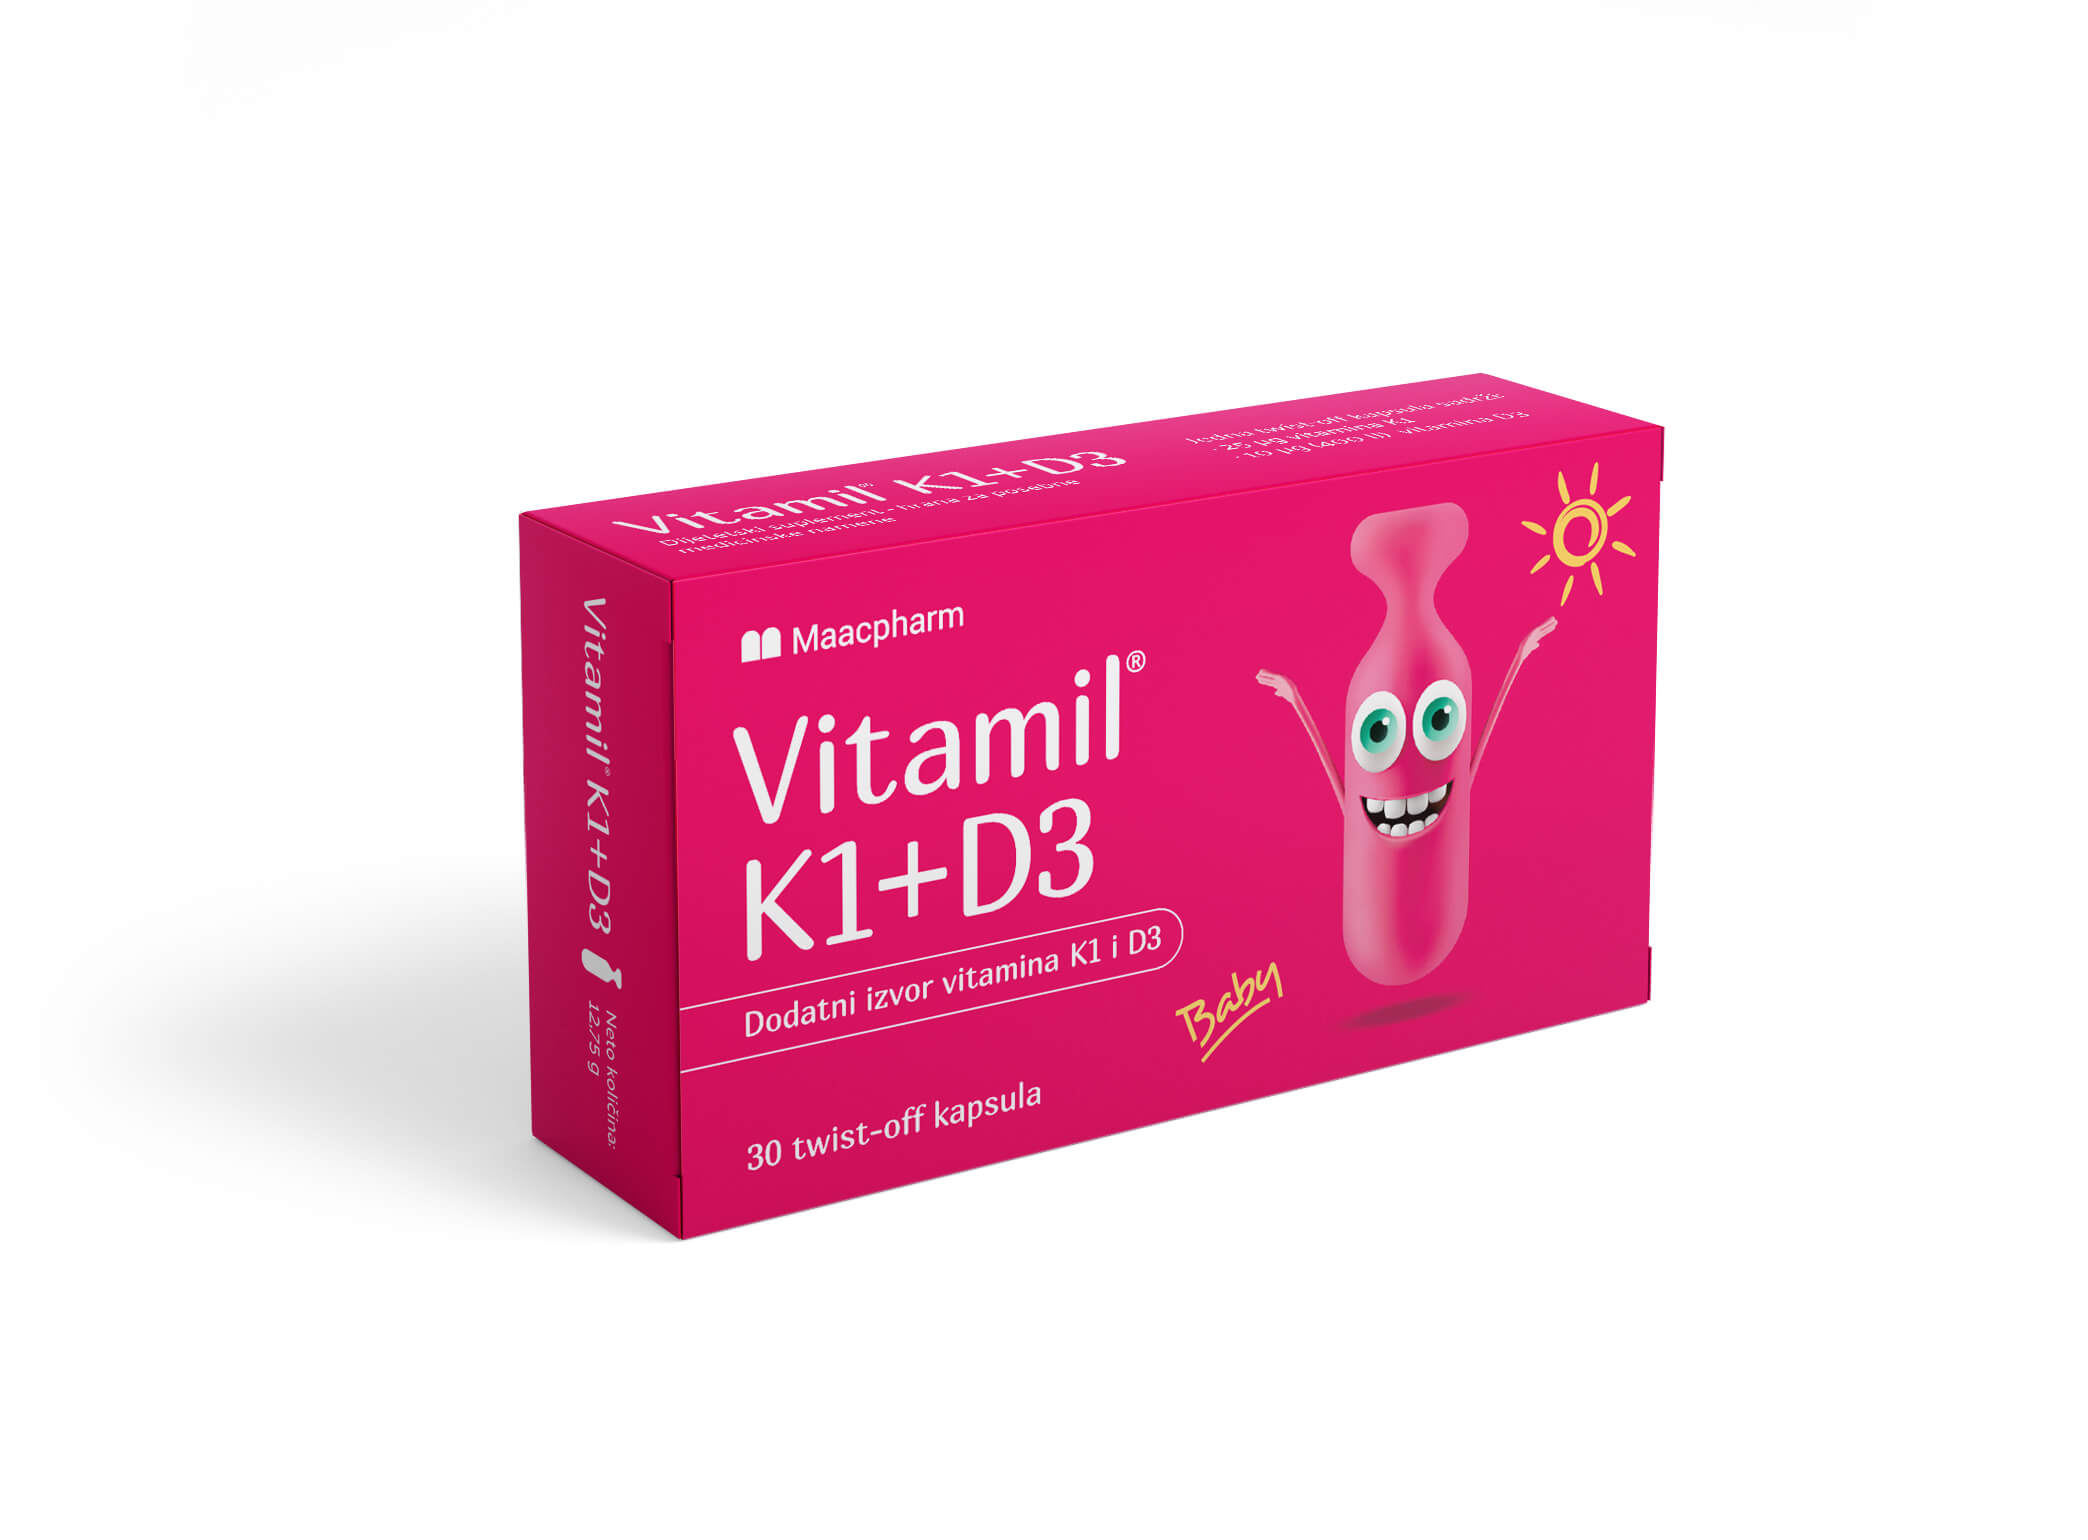 Vitamil K1+D3 Proizvod za posebnu medicinsku namenu.